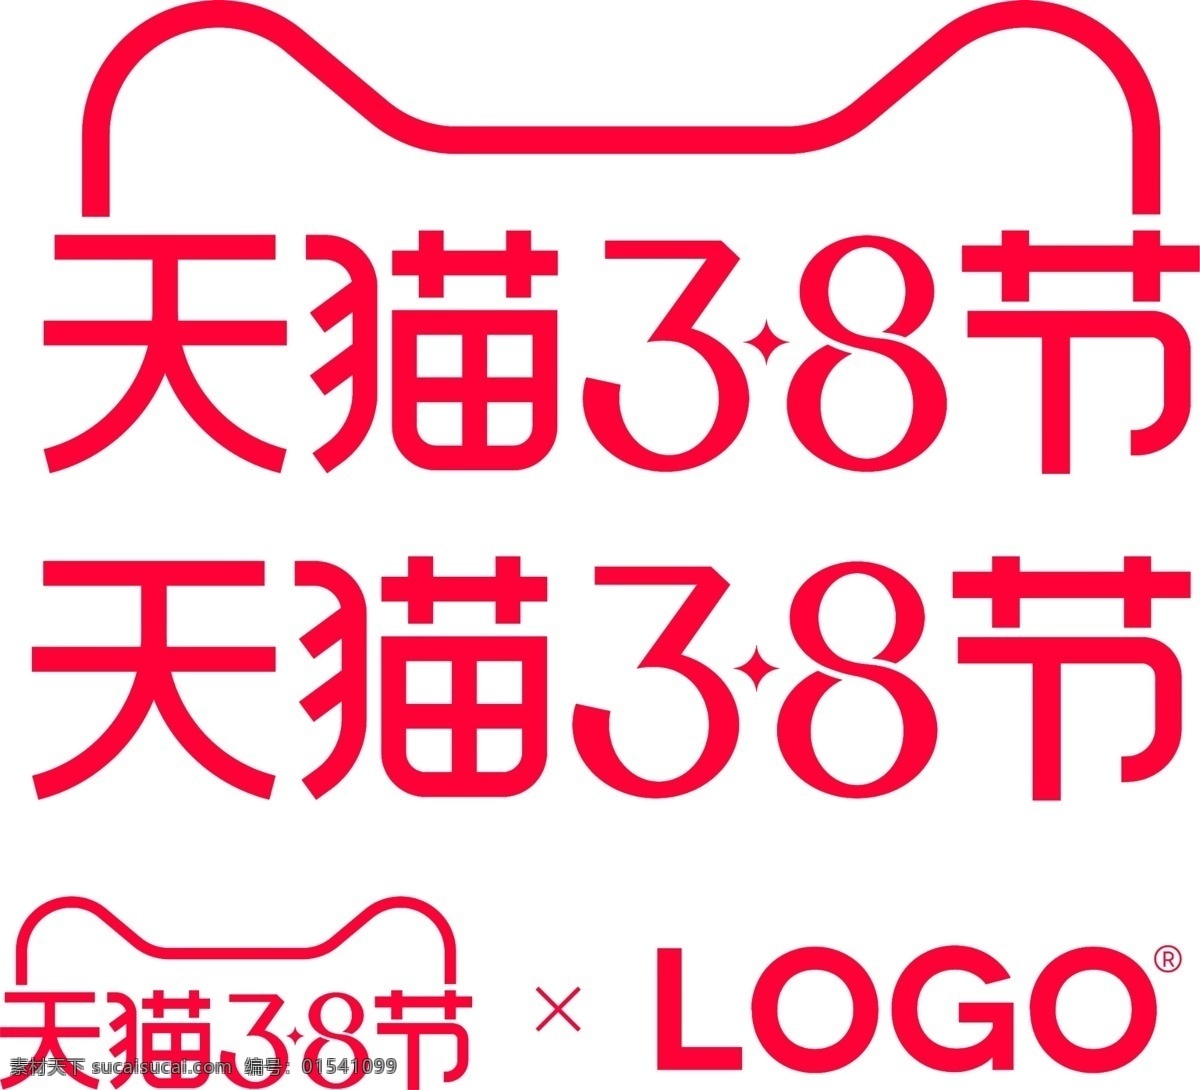 天猫 38 节 2020 官方标识 官方 标识 logo 女王 天猫38节 标识logo 4675x4264px 图标 标签 招贴设计